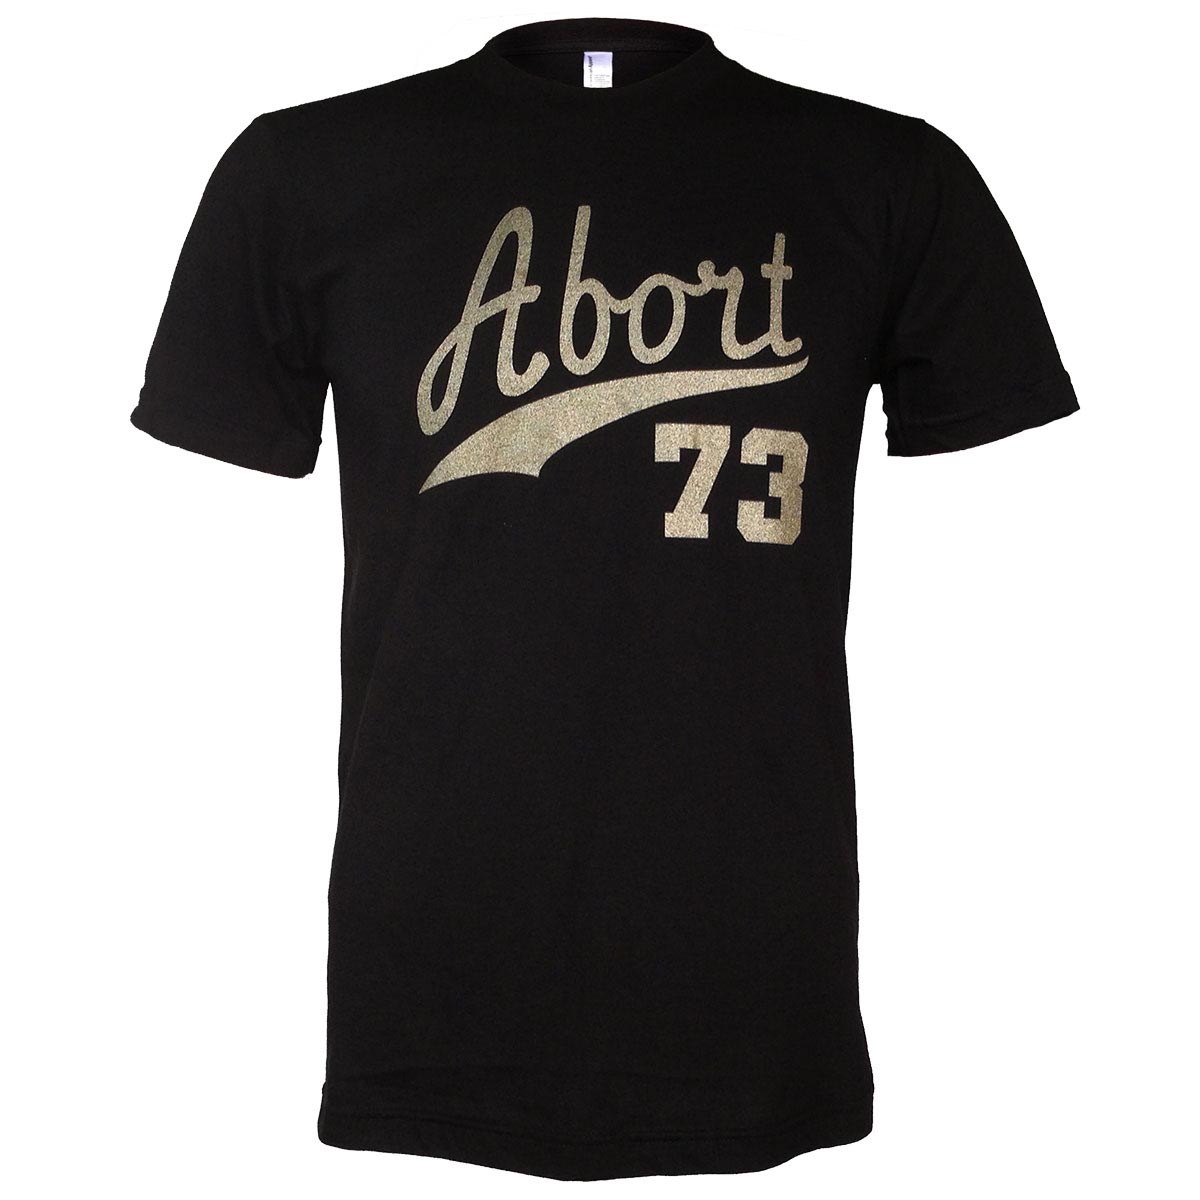 Abort73 (Vandy) (Abort73 Unisex T-shirt)